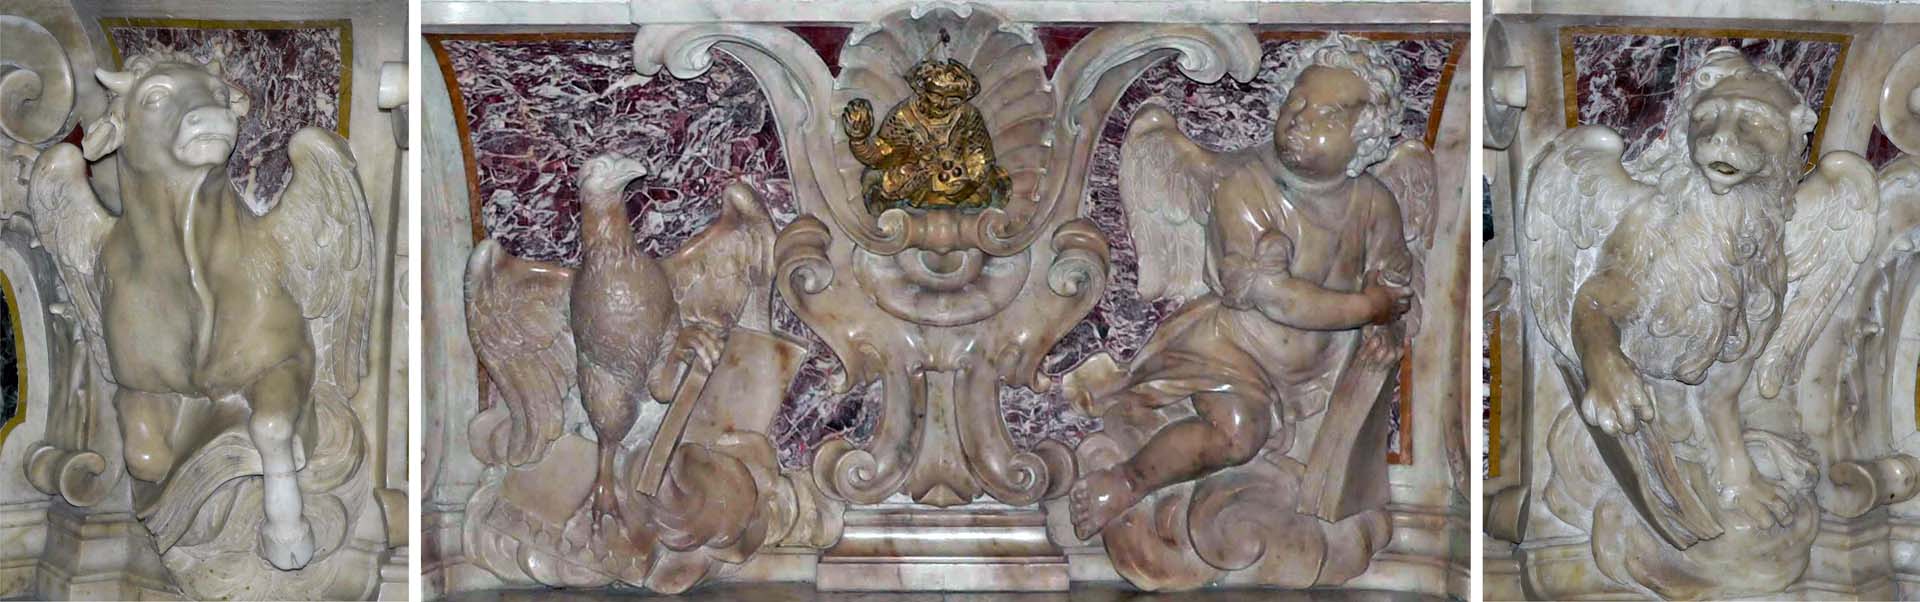 altare maggiore: sculture del paliotto